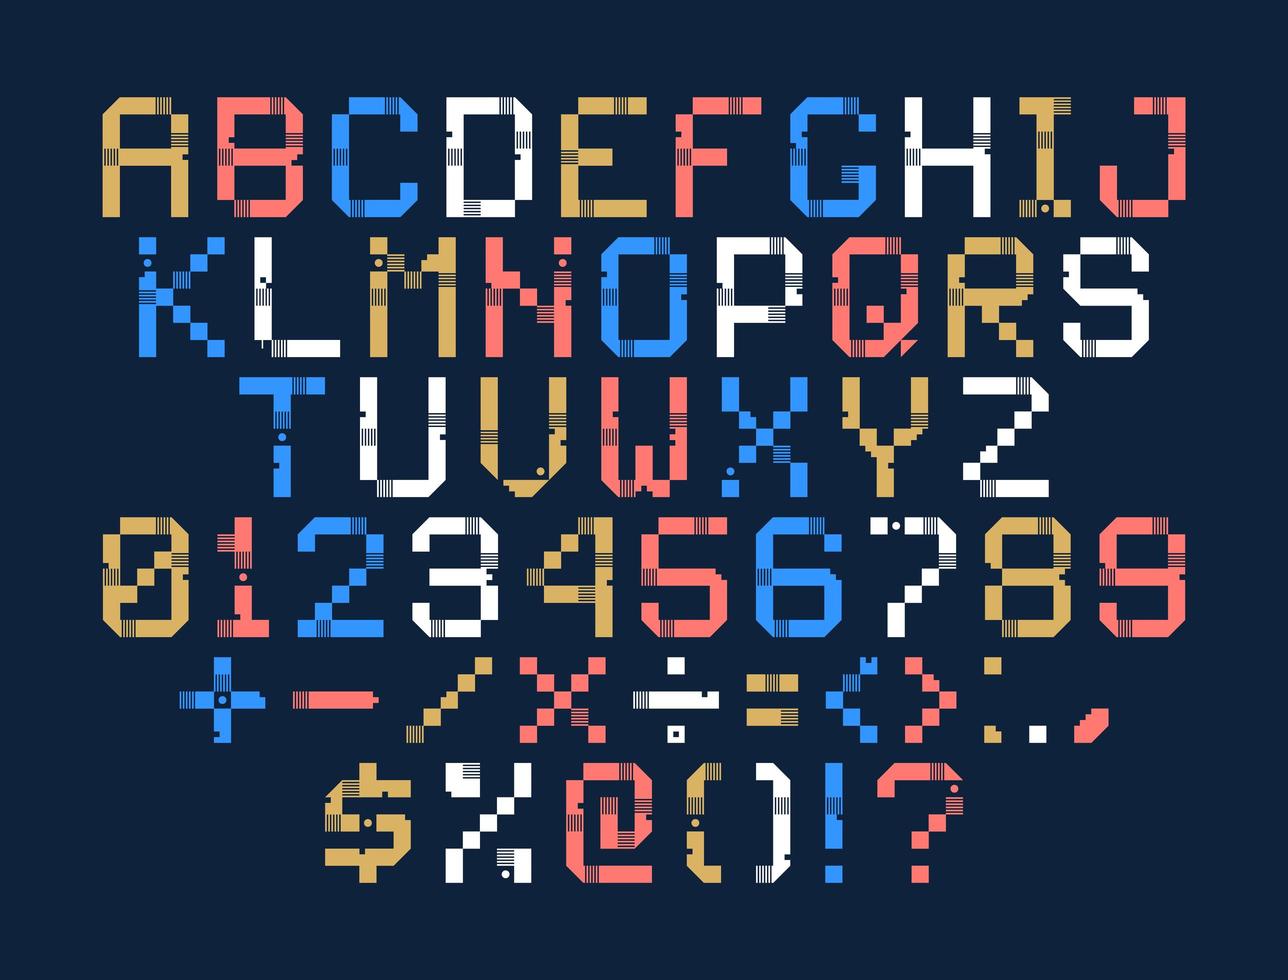 alfabeto del arte del pixel del vector. las letras de colores constan de módulos. letras de tiras, cuadrados y puntos. Alfabeto geométrico para carteles como marcador electrónico. vector